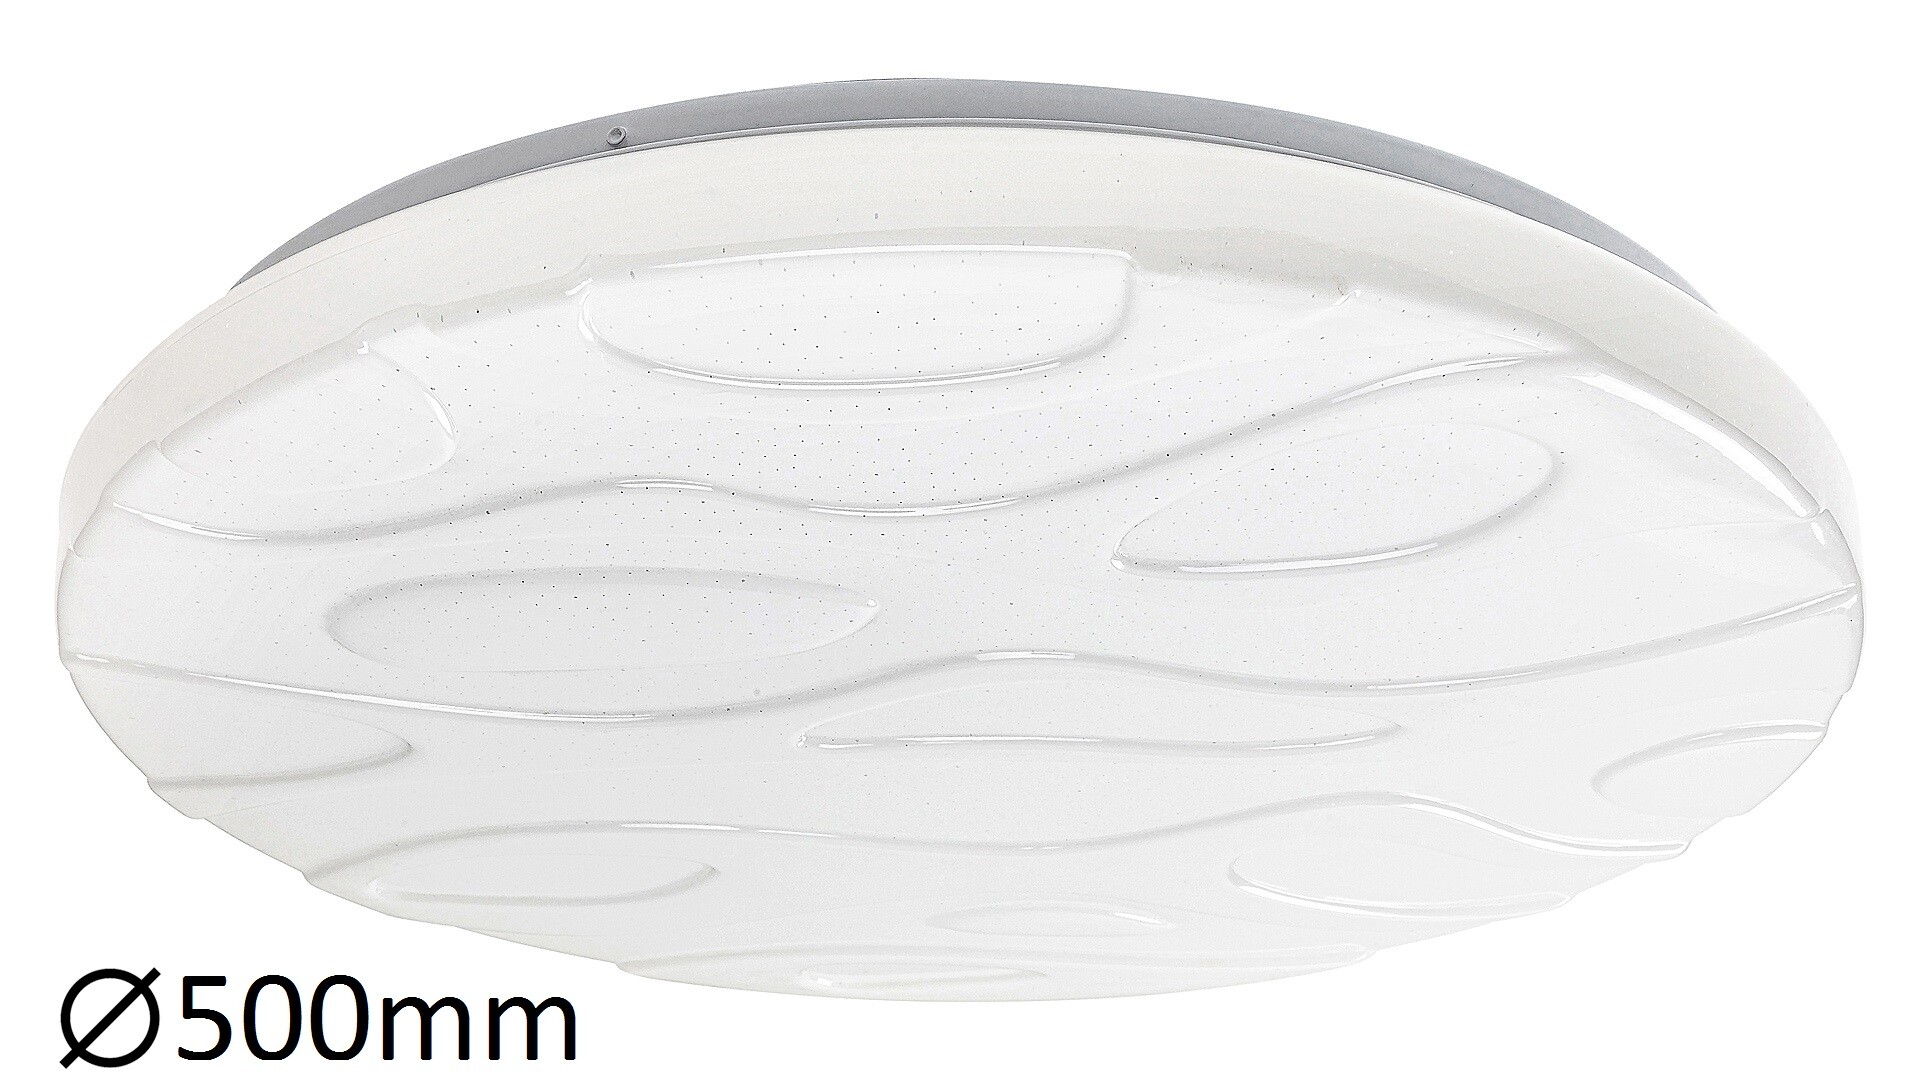 Deckenleuchte Mason 1508, 50W, 4500lm, Metall, weiß, rund, dimmbar, ø500mm